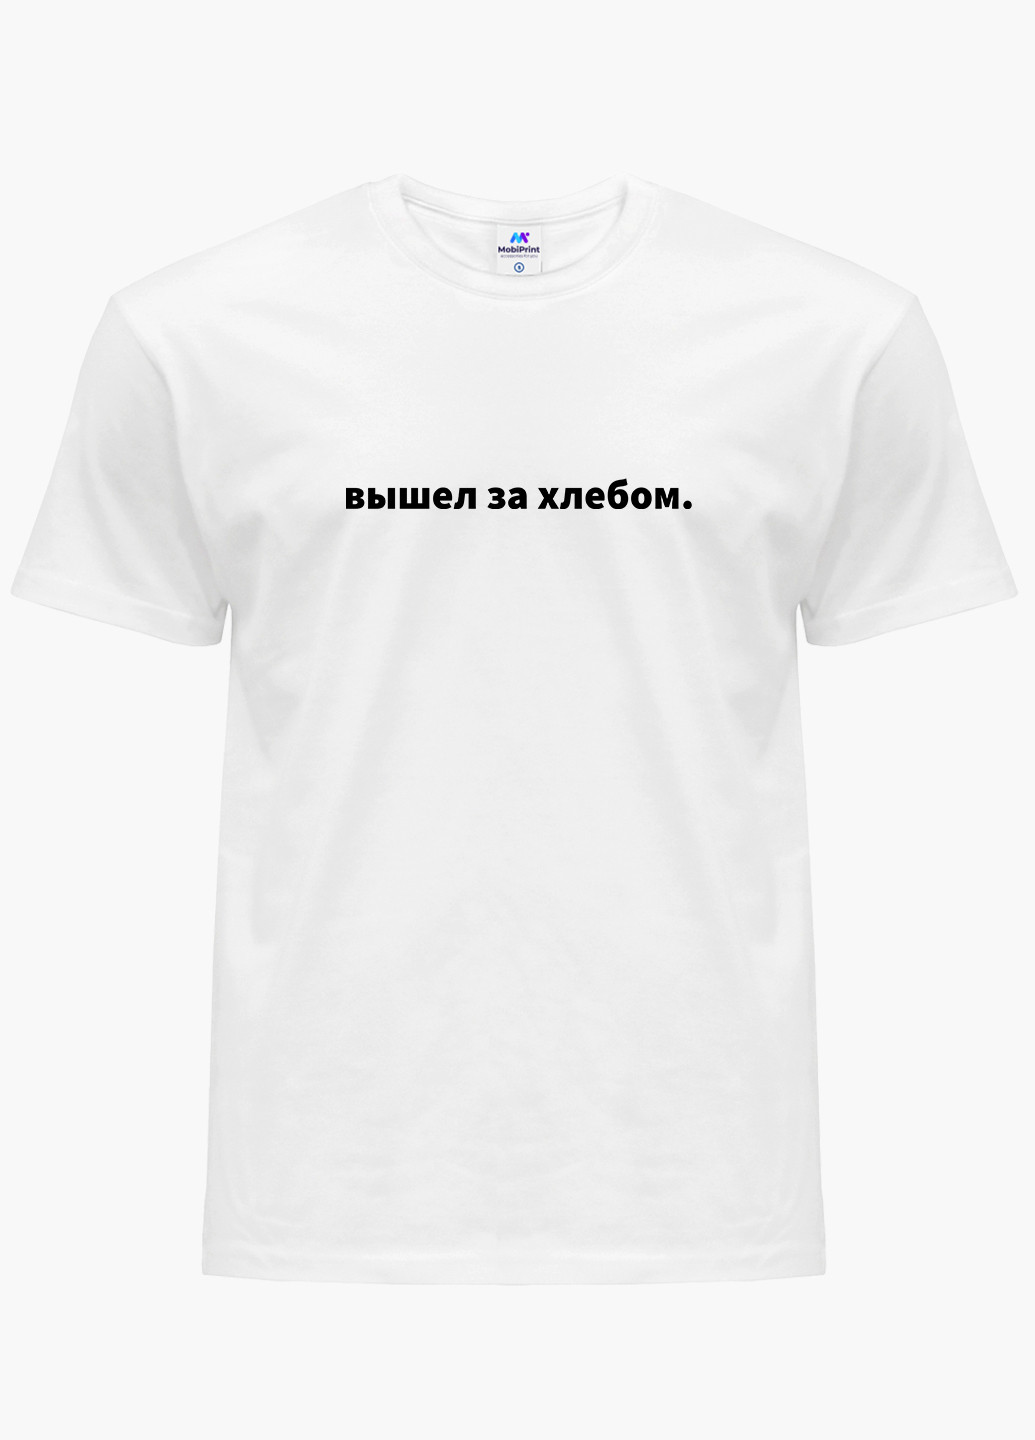 Біла футболка чоловіча напис вийшов за хлібом білий (9223-1462) xxl MobiPrint